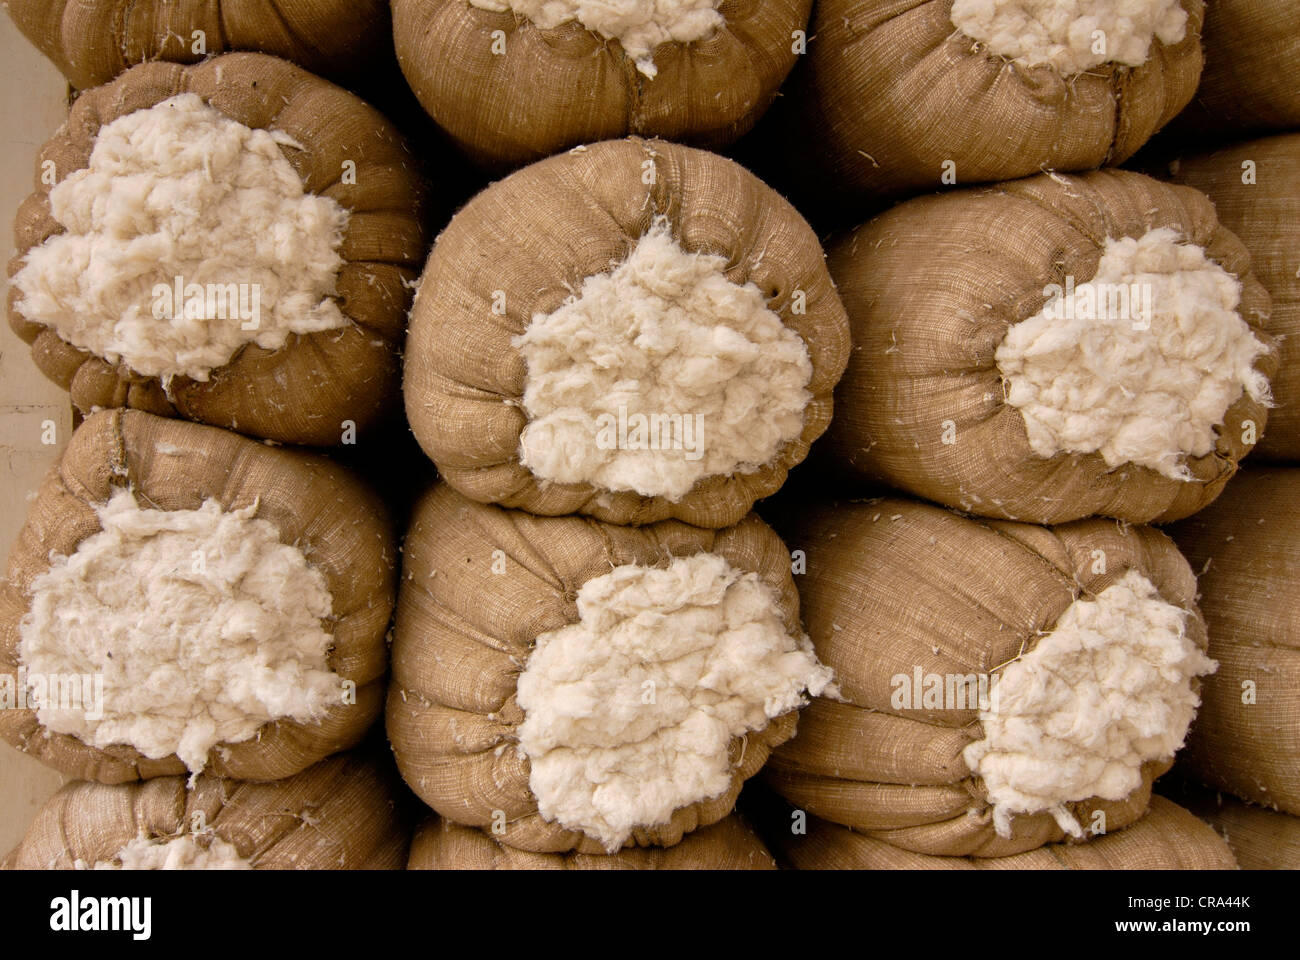 Cotton sacks, Cairo, Egypt, Africa Stock Photo